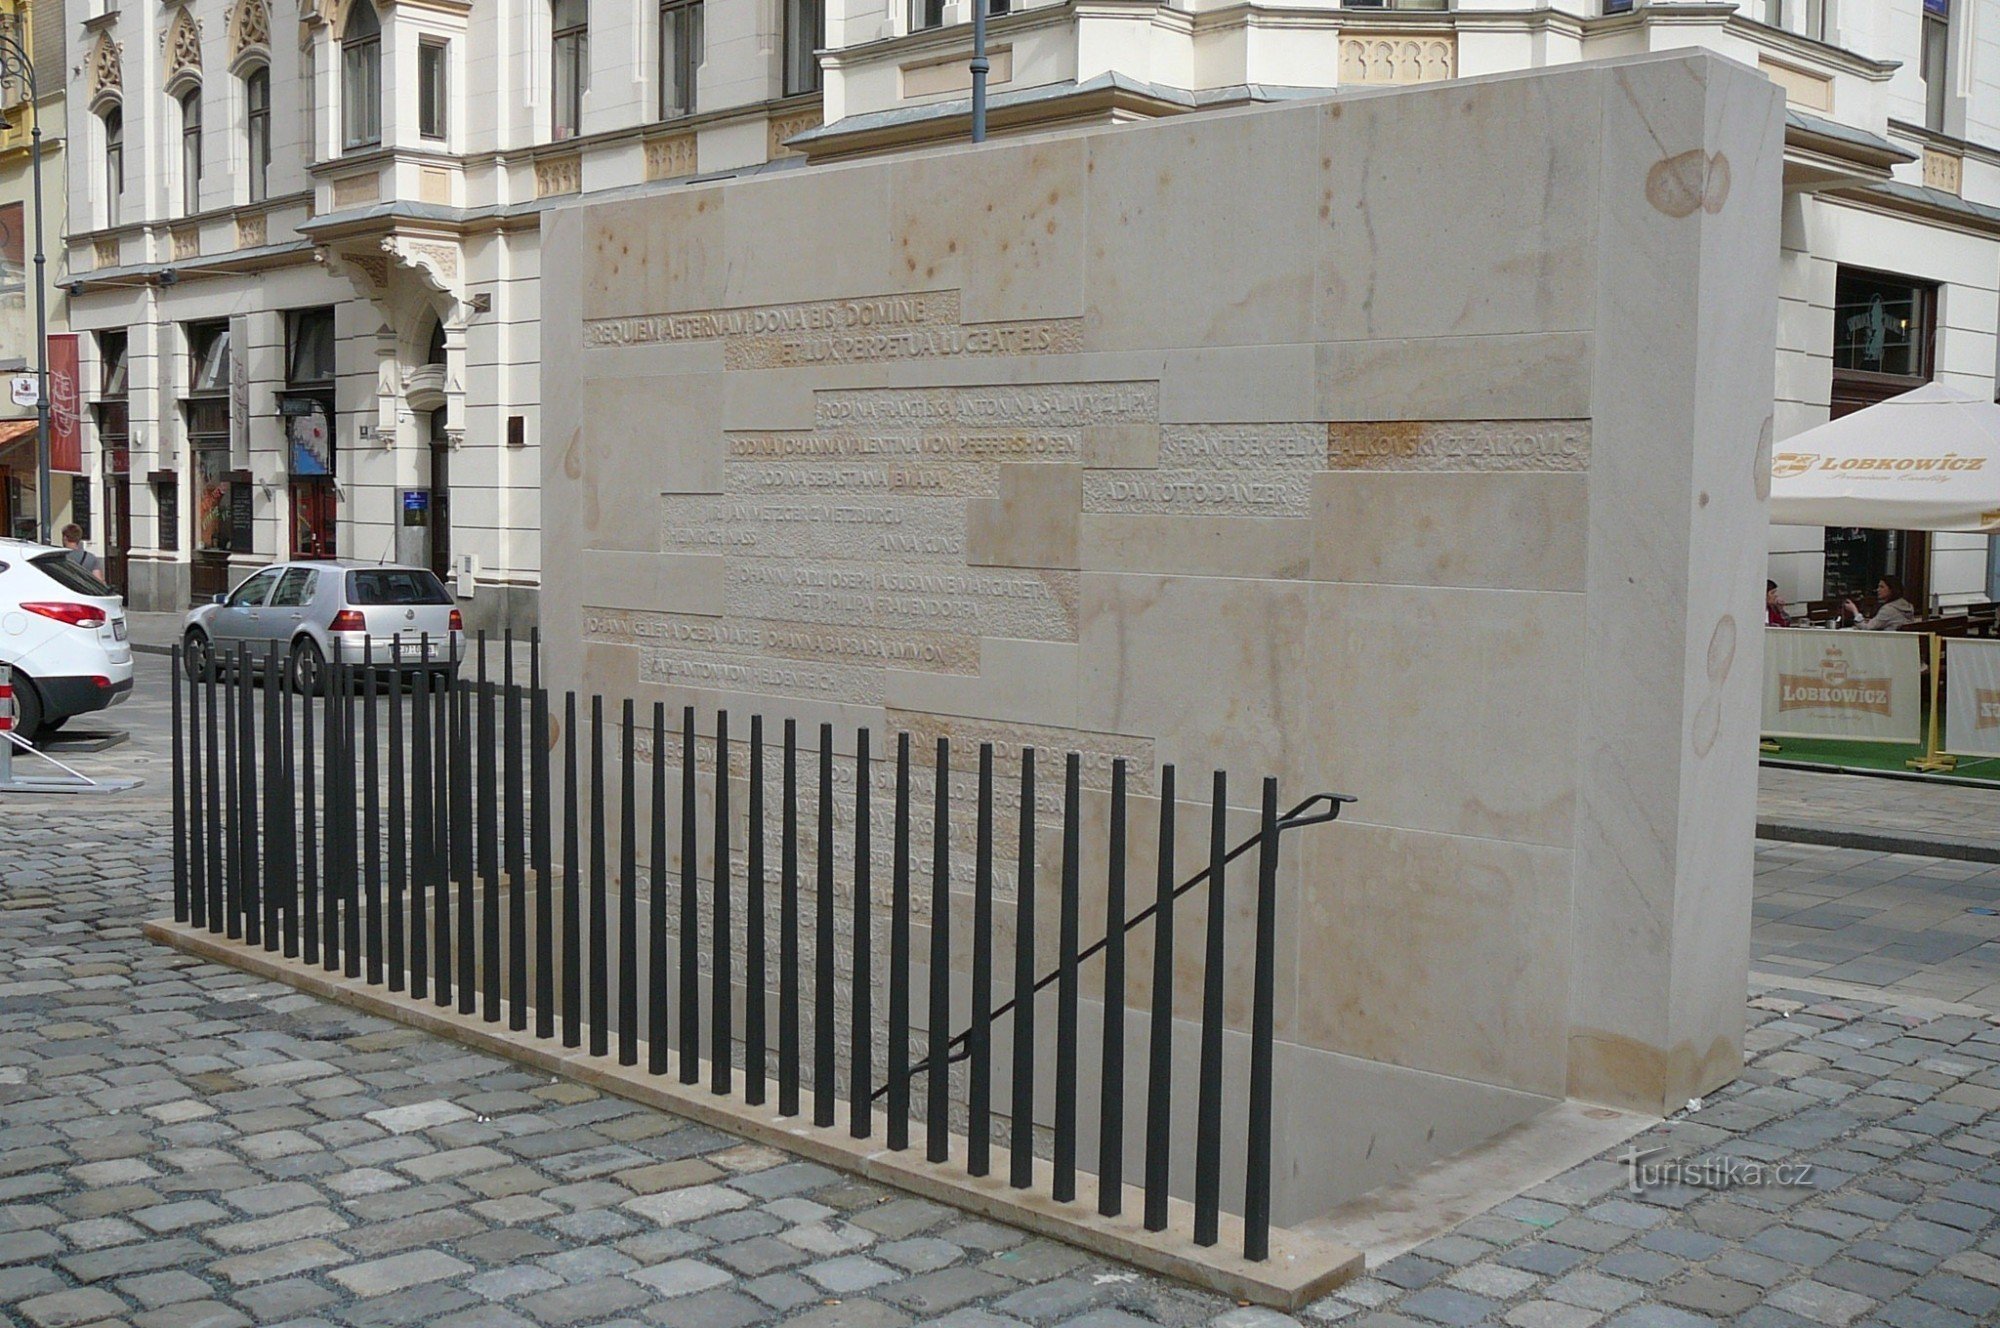 Zid de piatră de intrare cu o scară și nume în osuarul familiilor îngropate din Brno